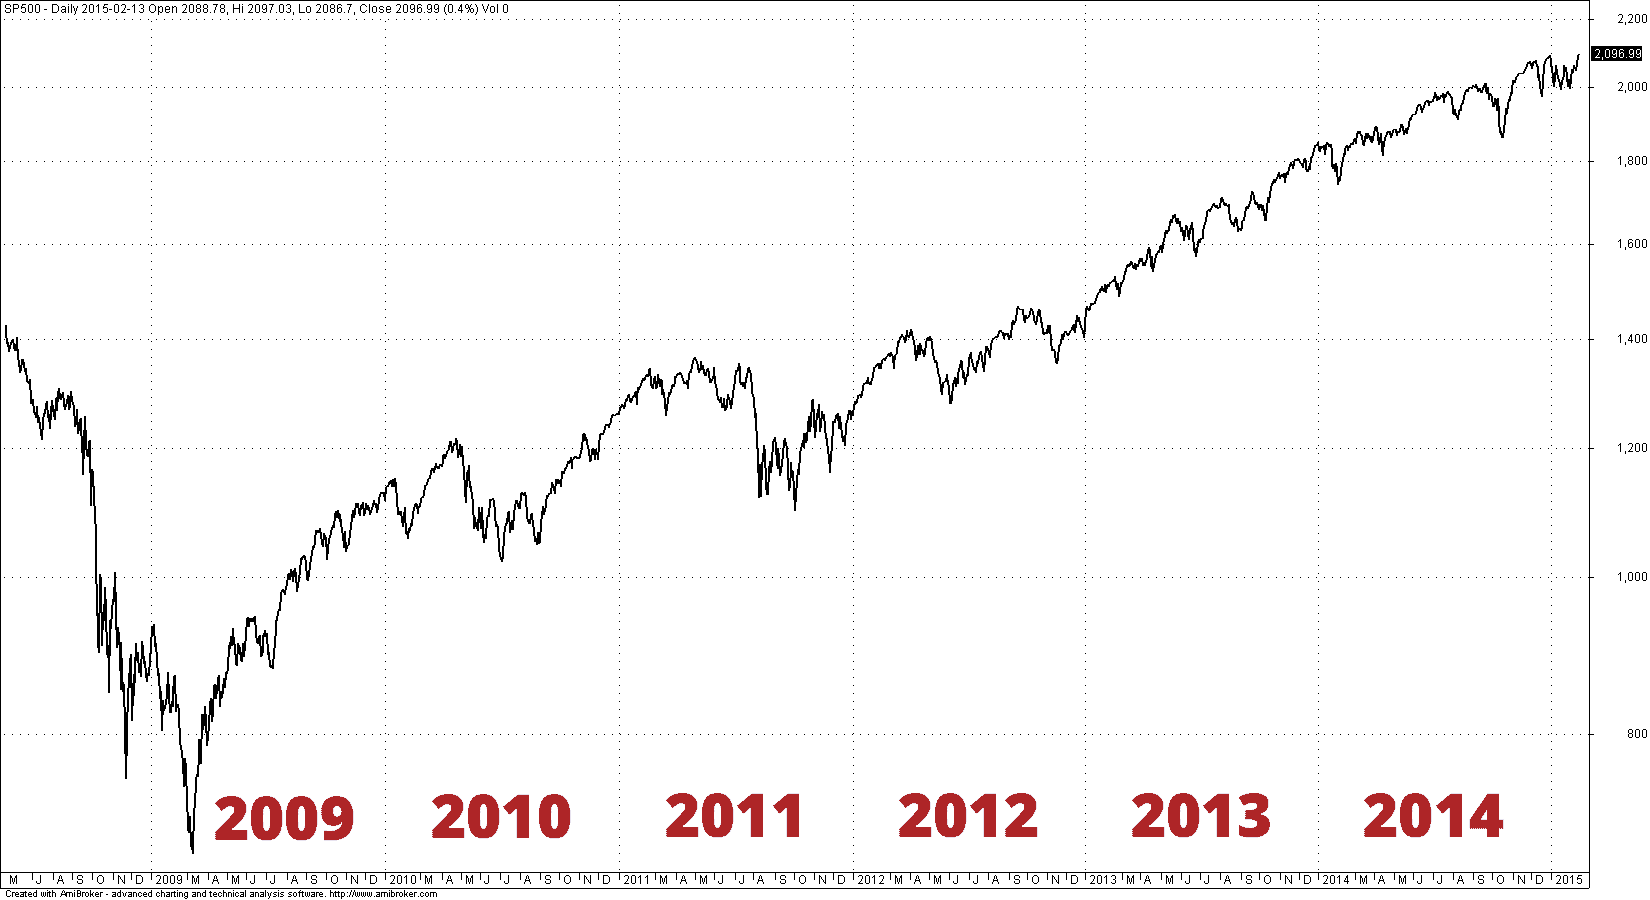 Wykres indeksu S&P500